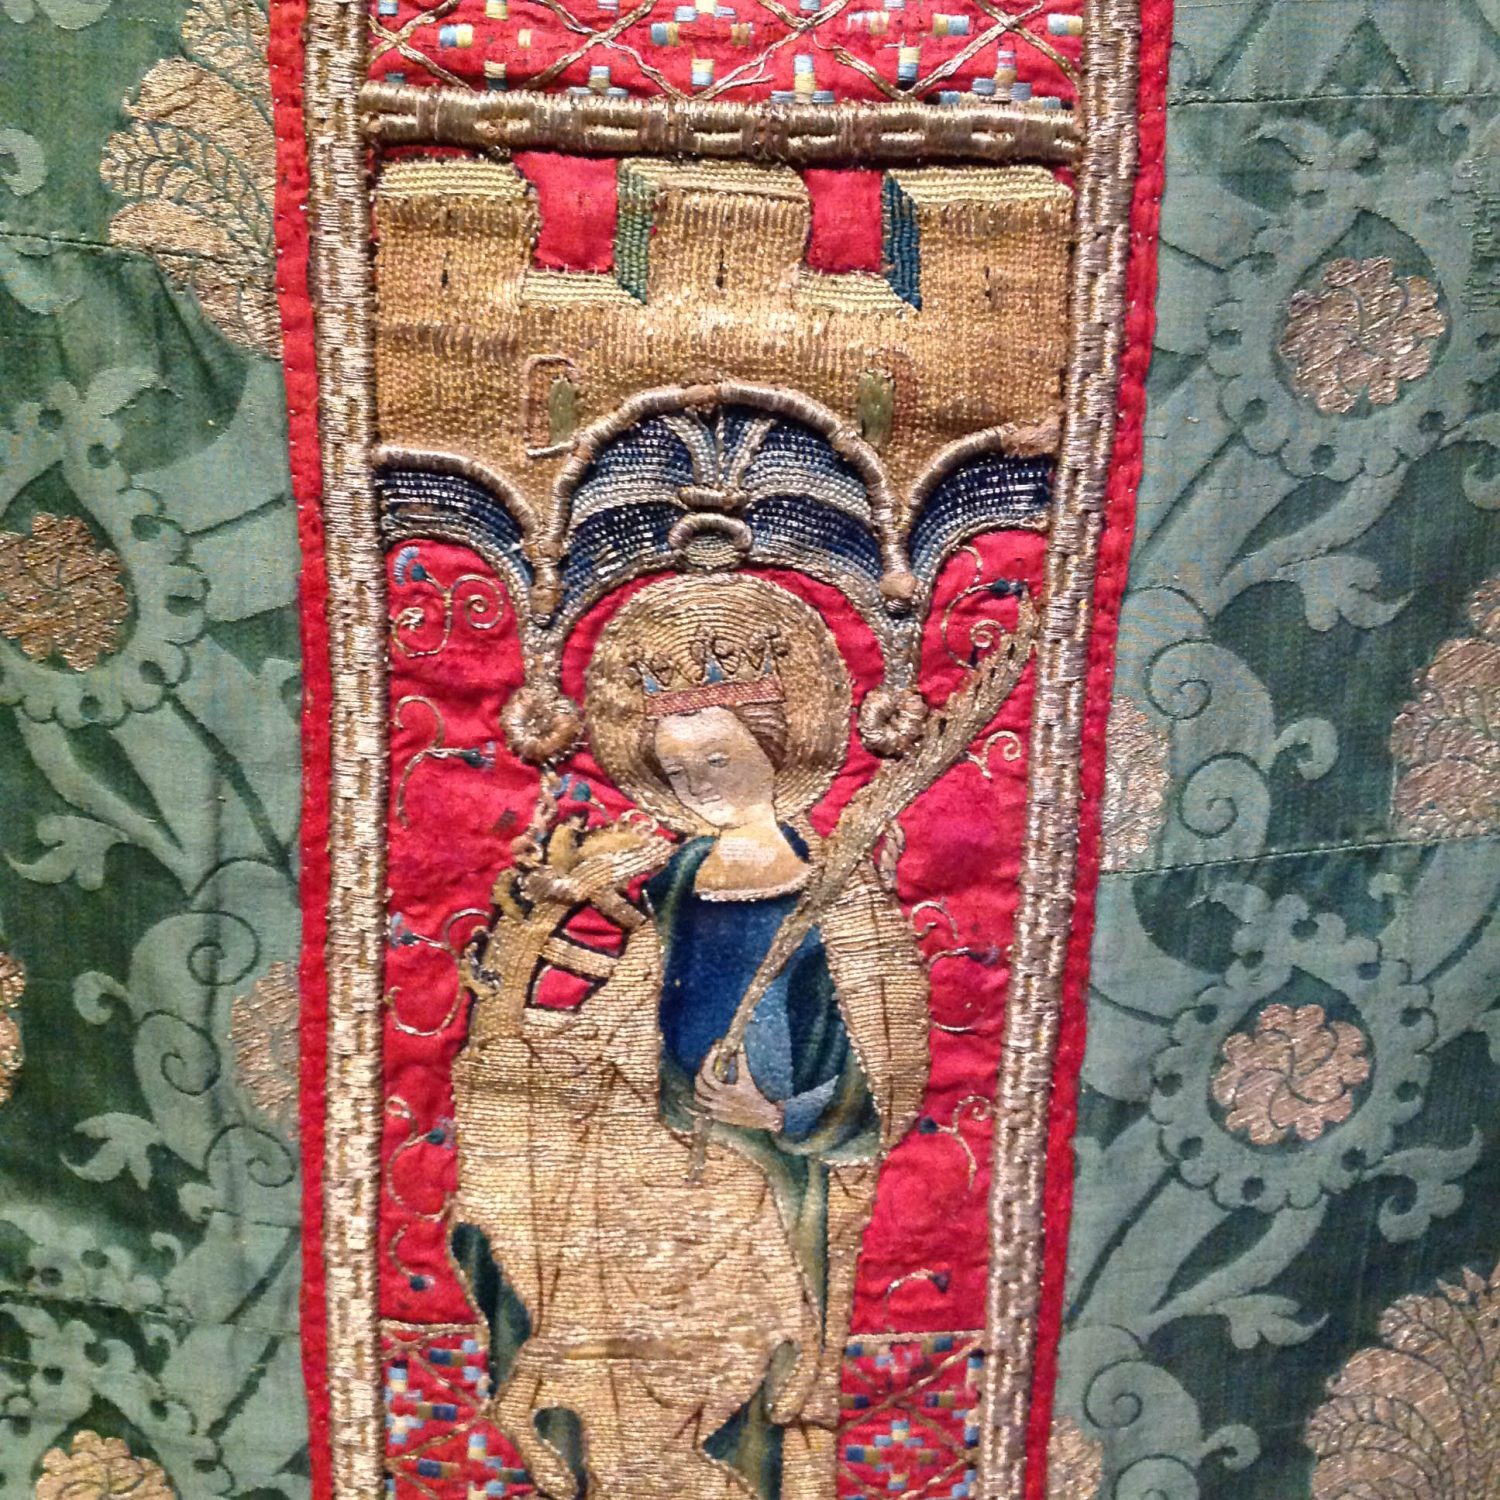 Victoria & Albert Museum Medieval Galleries | Textile Art